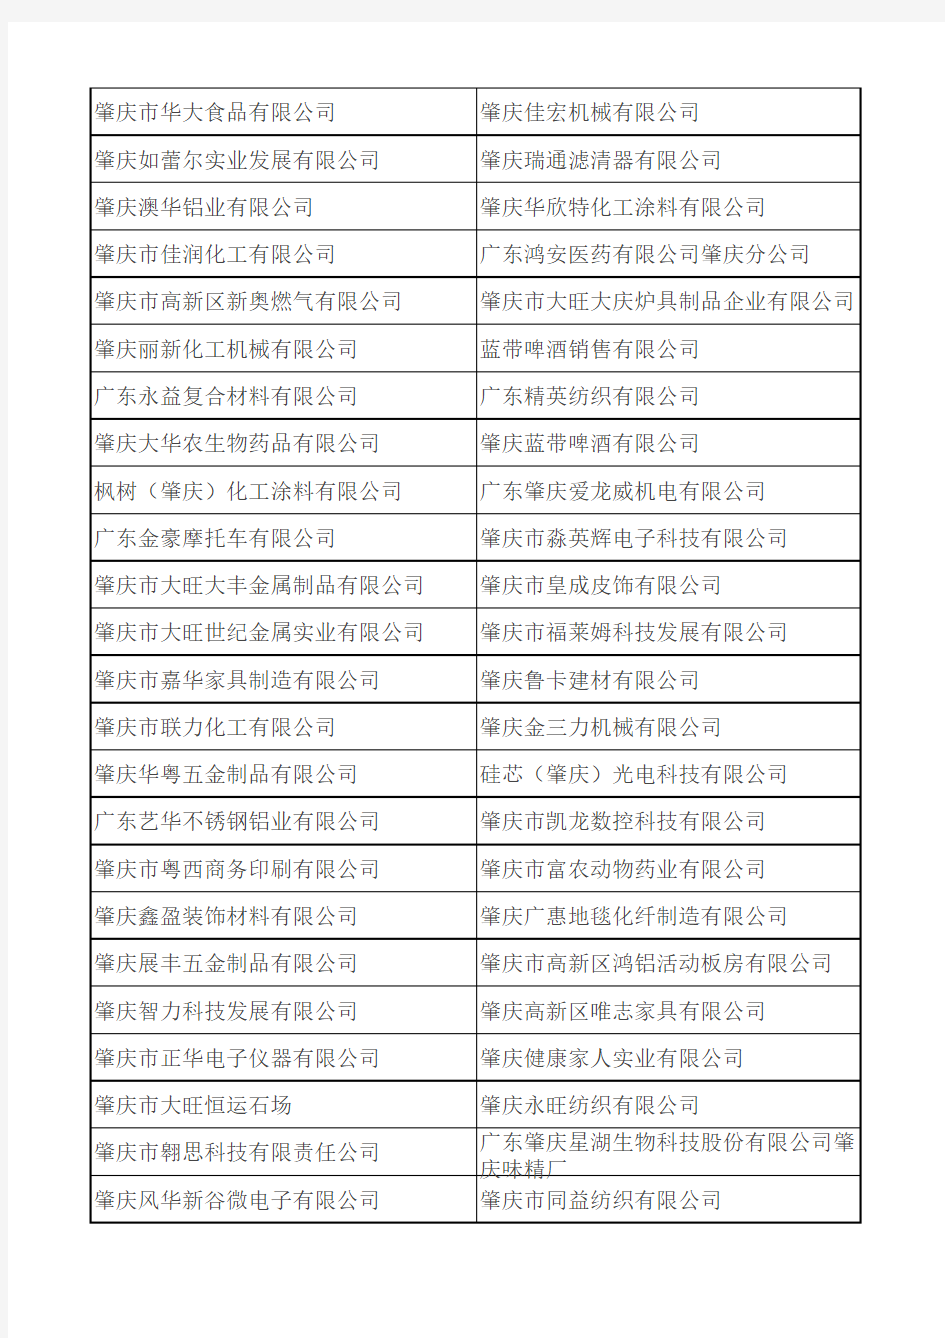 肇庆大旺高新区企业名录(2013)